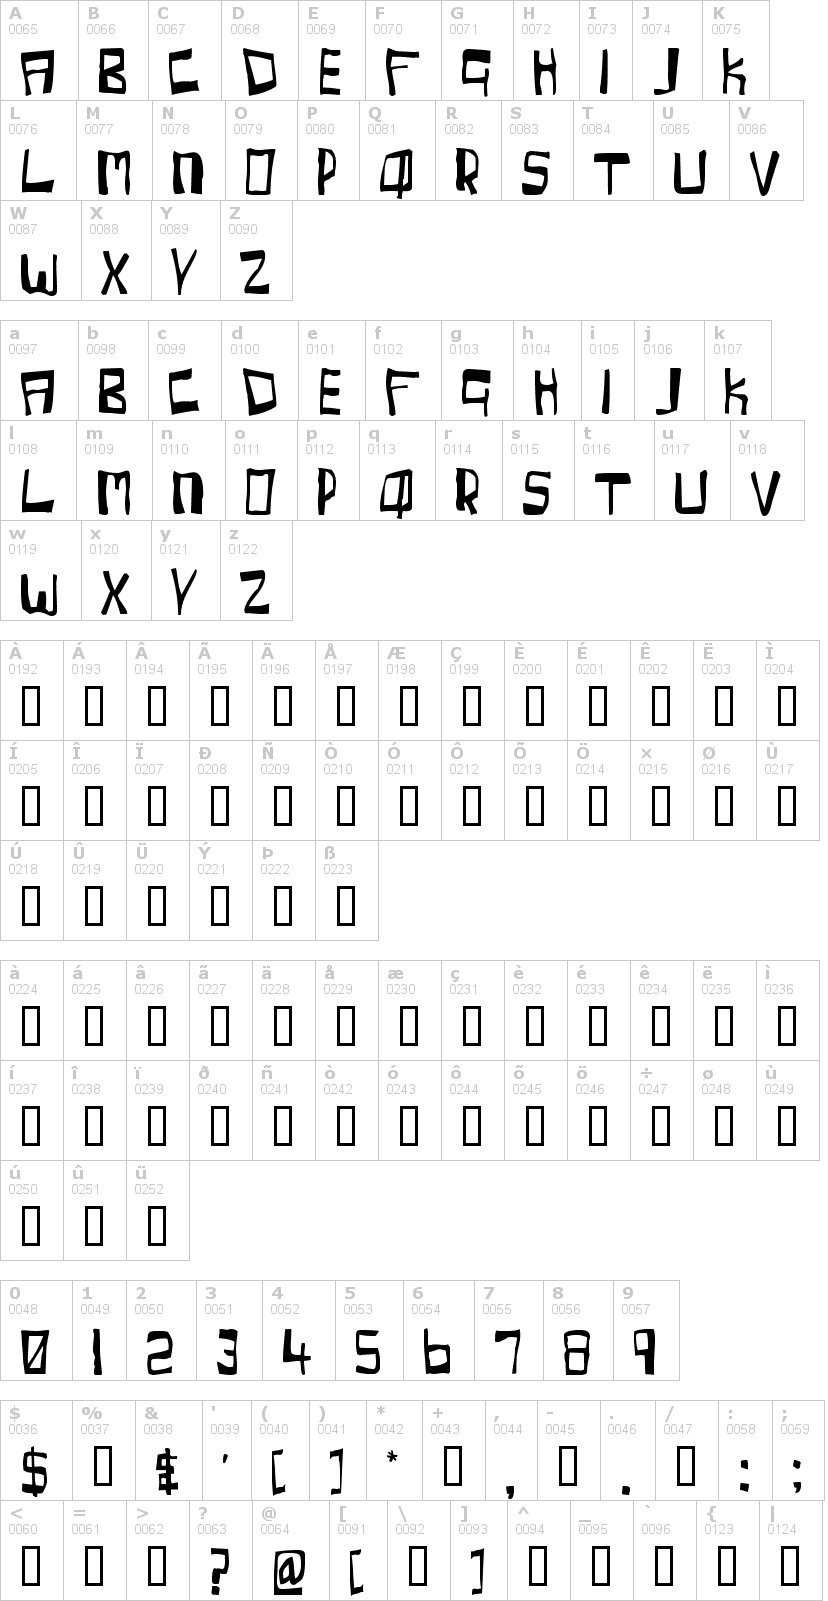 Lettere dell'alfabeto del font cherry-coke con le quali è possibile realizzare adesivi prespaziati